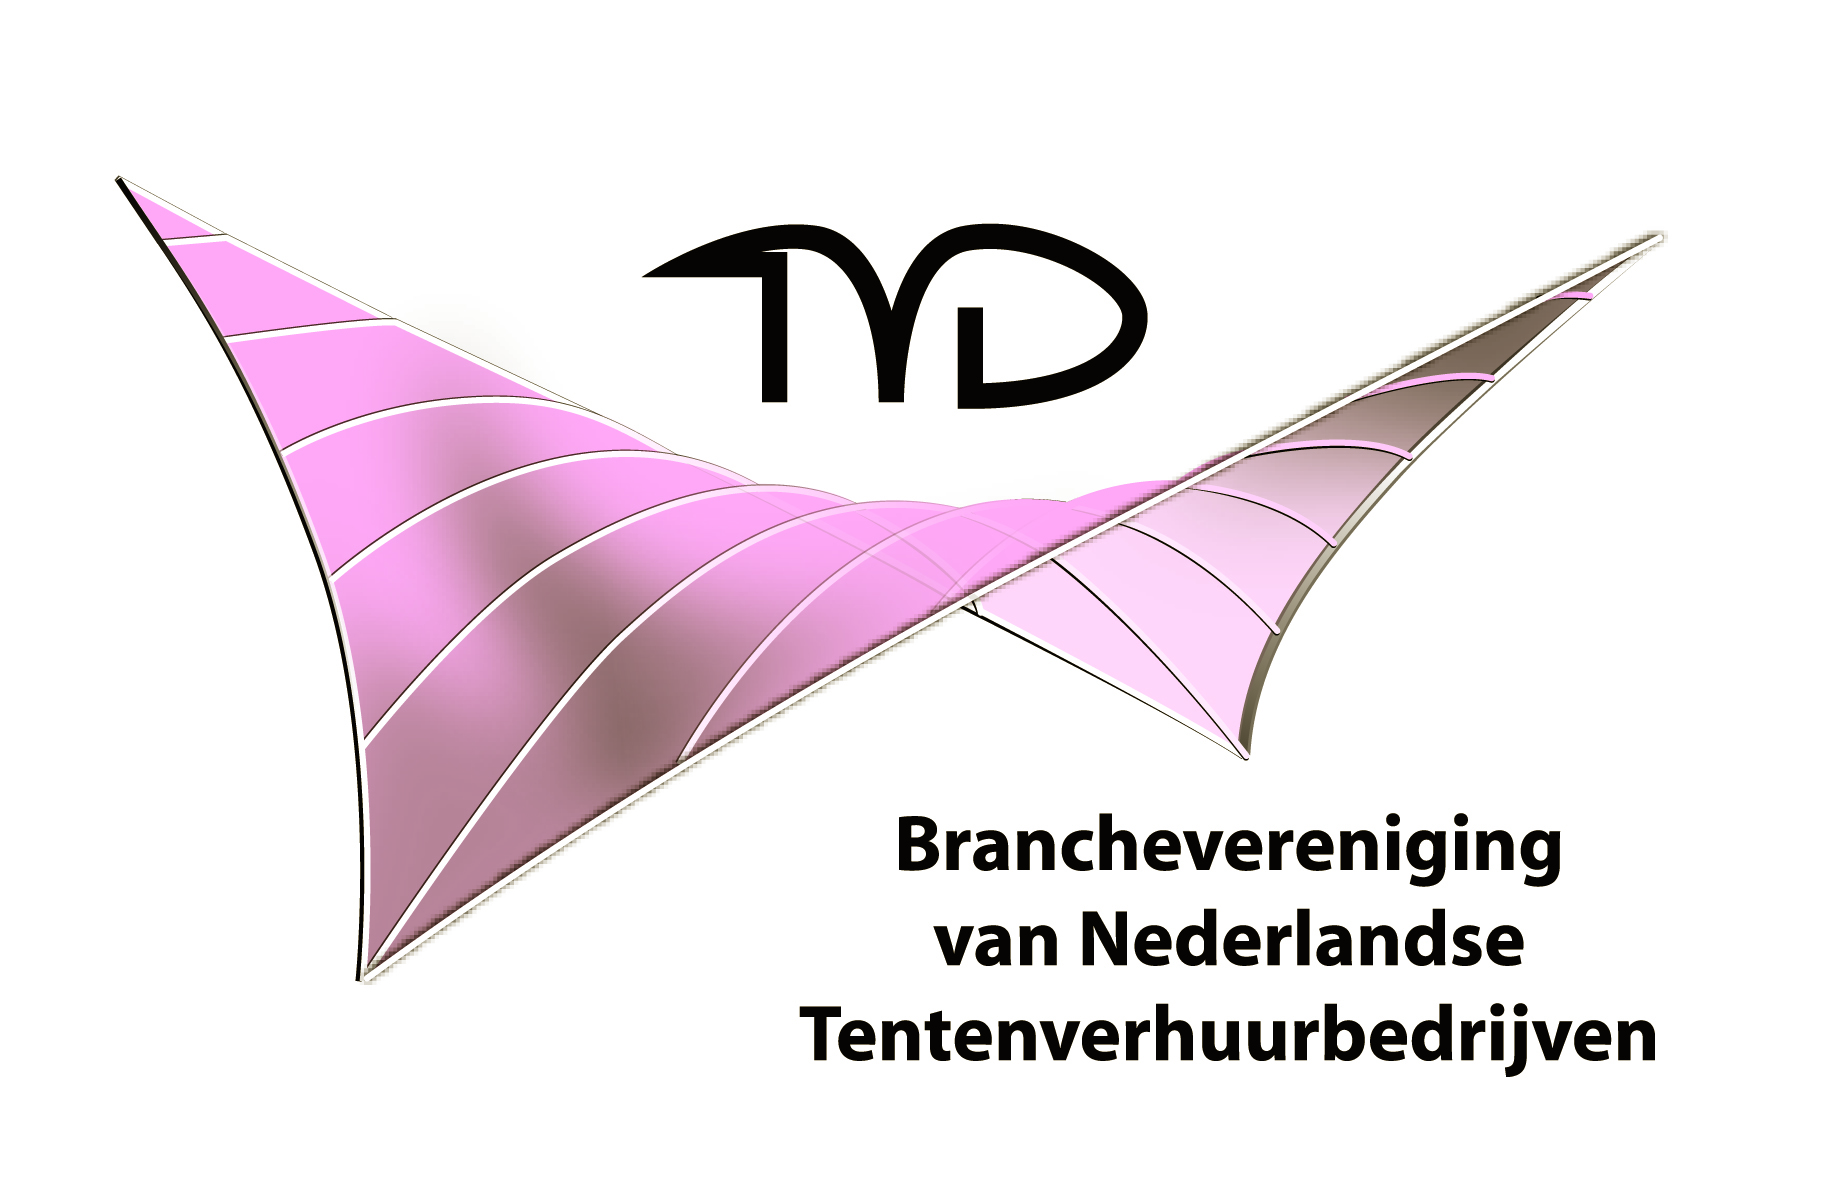 Branchevereniging van Nederlandse Tentenverhuurbedrijven